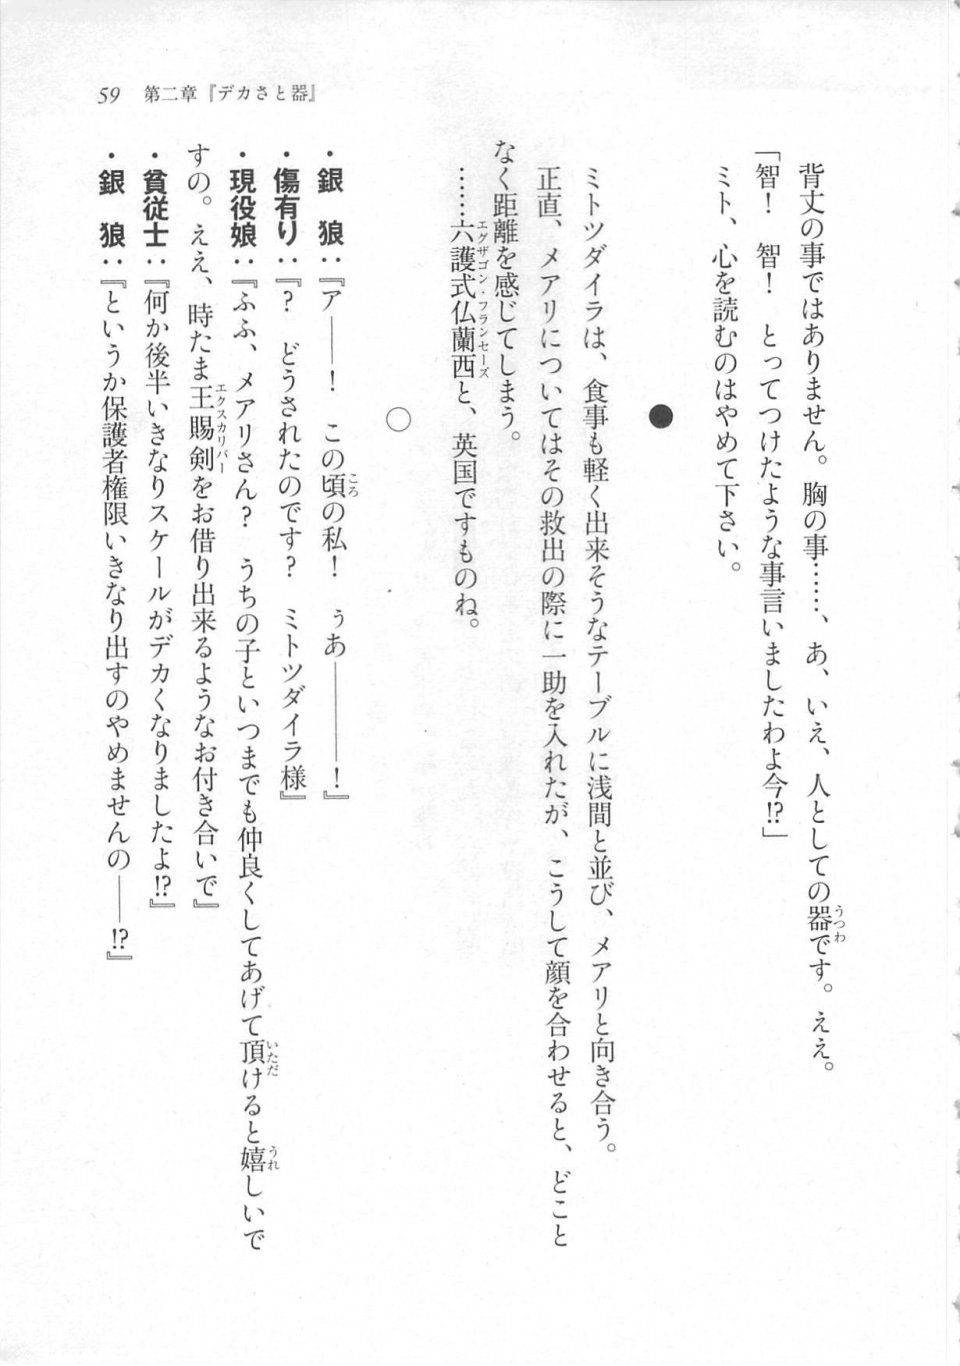 Kyoukai Senjou no Horizon LN Sidestory Vol 3 - Photo #63